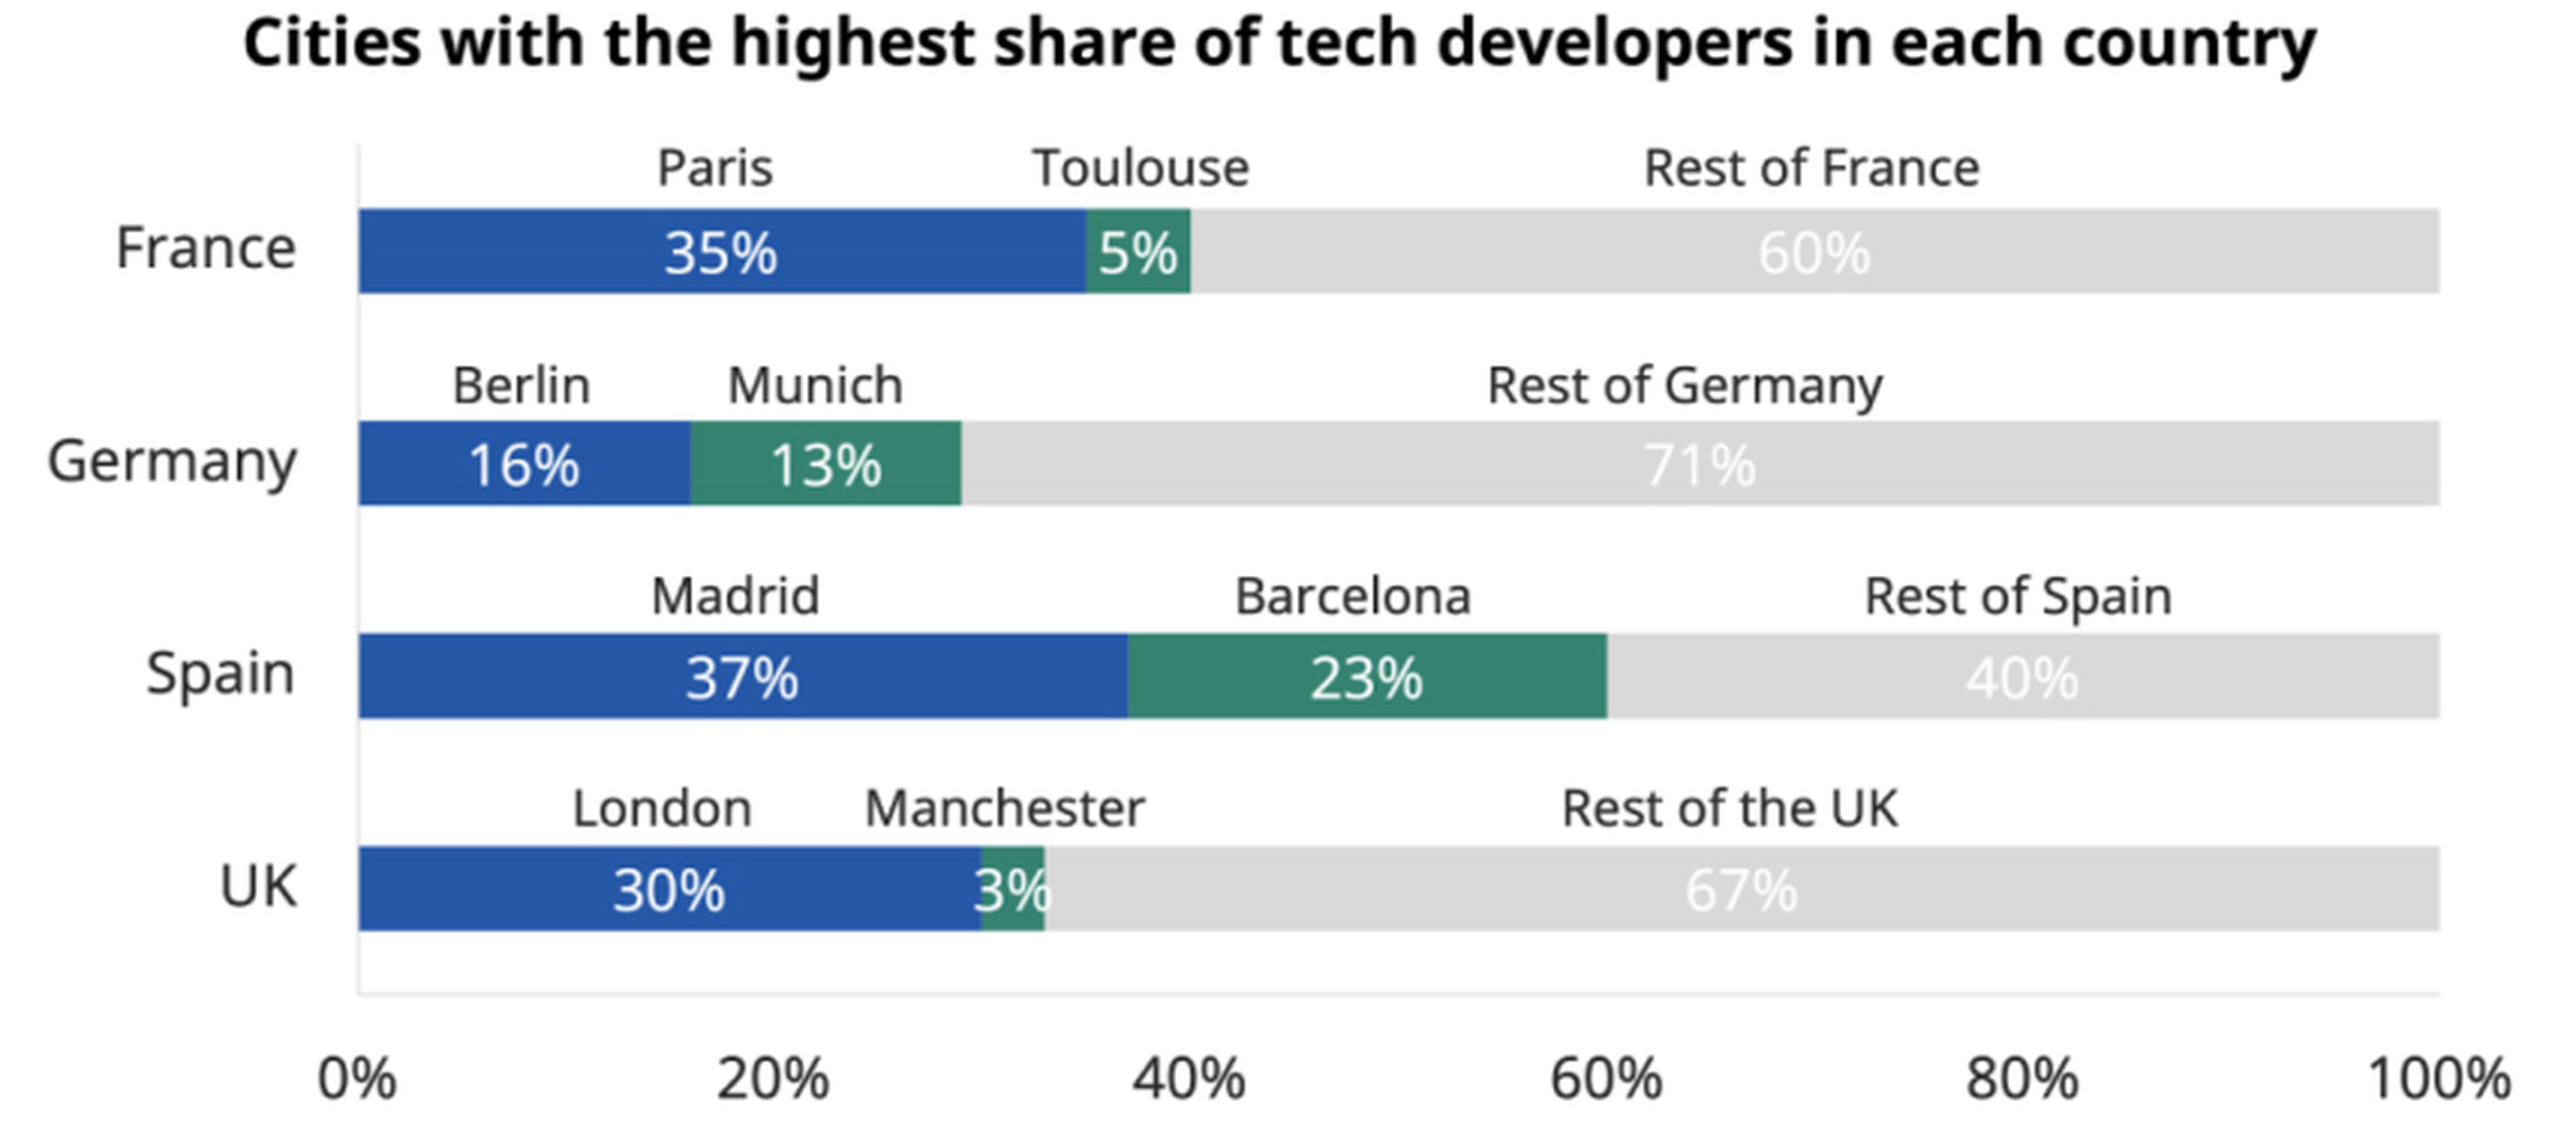 Ciudades con mayor porcentaje de desarrolladores tecnológicos en Francia, Alemania, España y Reino Unido